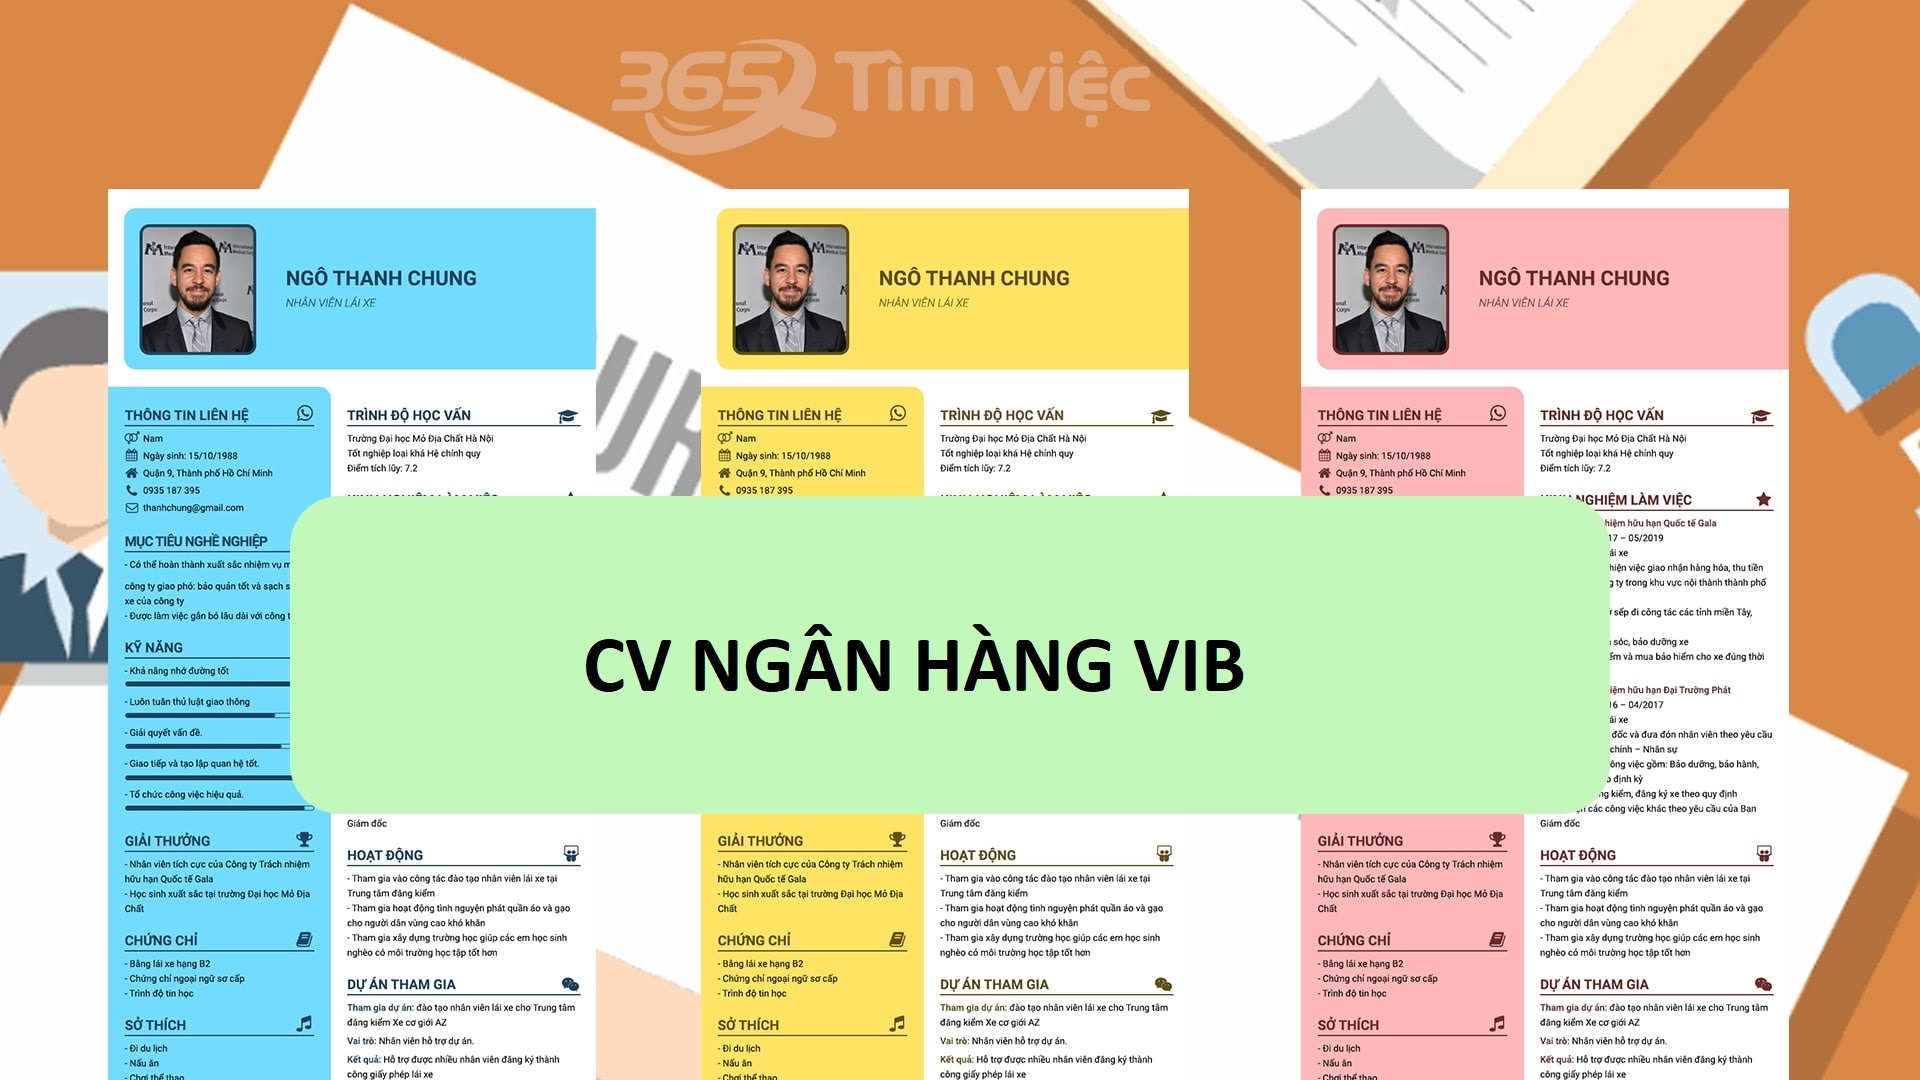 Hướng dẫn cách viết CV xin việc ngân hàng VIB chuyên nghiệp và hiệu quả nhất